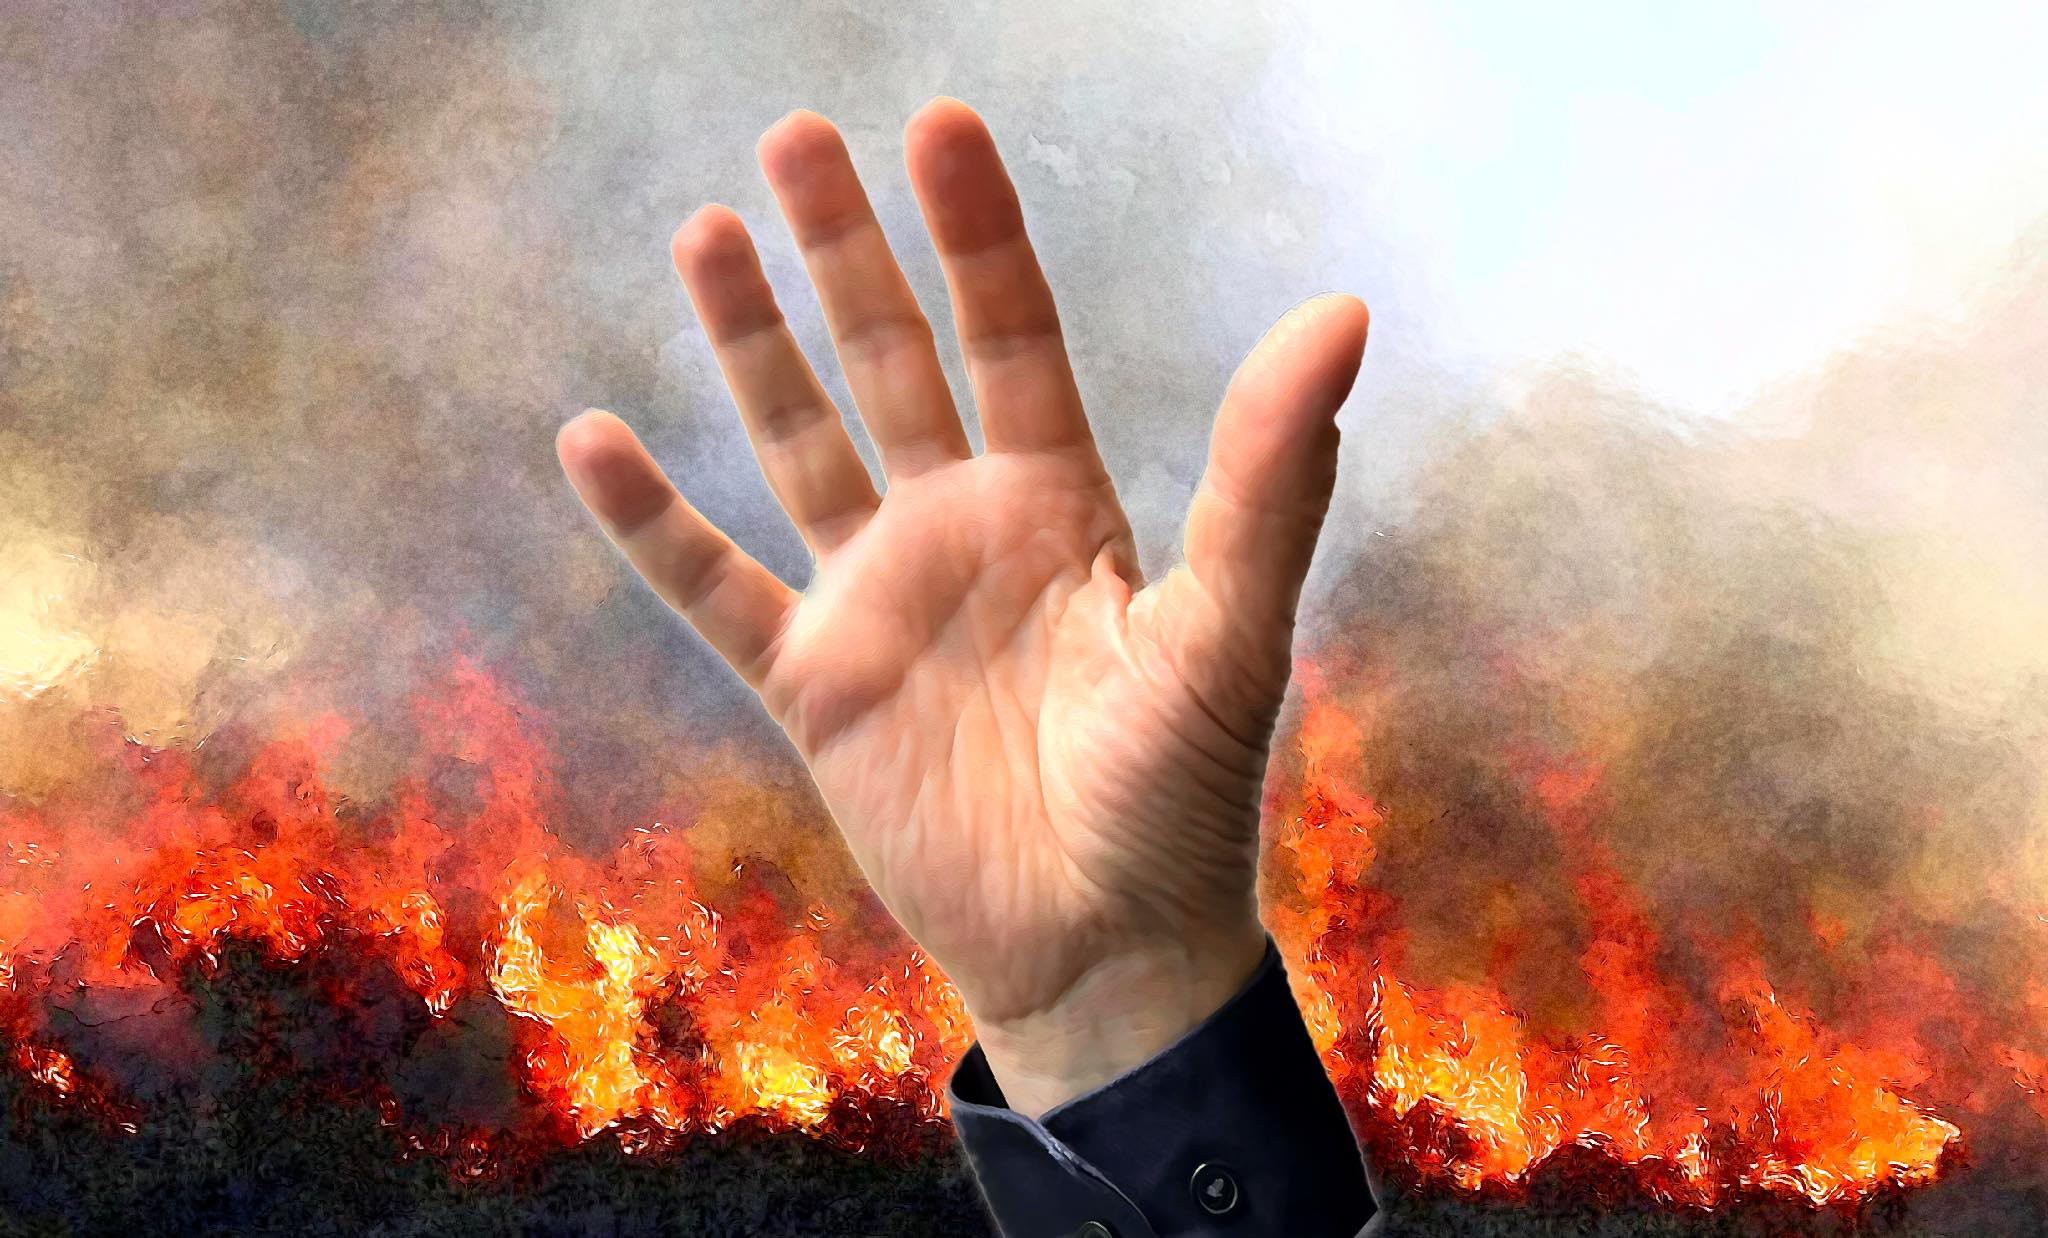 brandbrief gert de goede dichter brand wereldbrand wereld klimaat ramp bosbranden hagelstenen overstromingen honger dorst oorlogen dichten roep om verandering klimaat crisis ramp